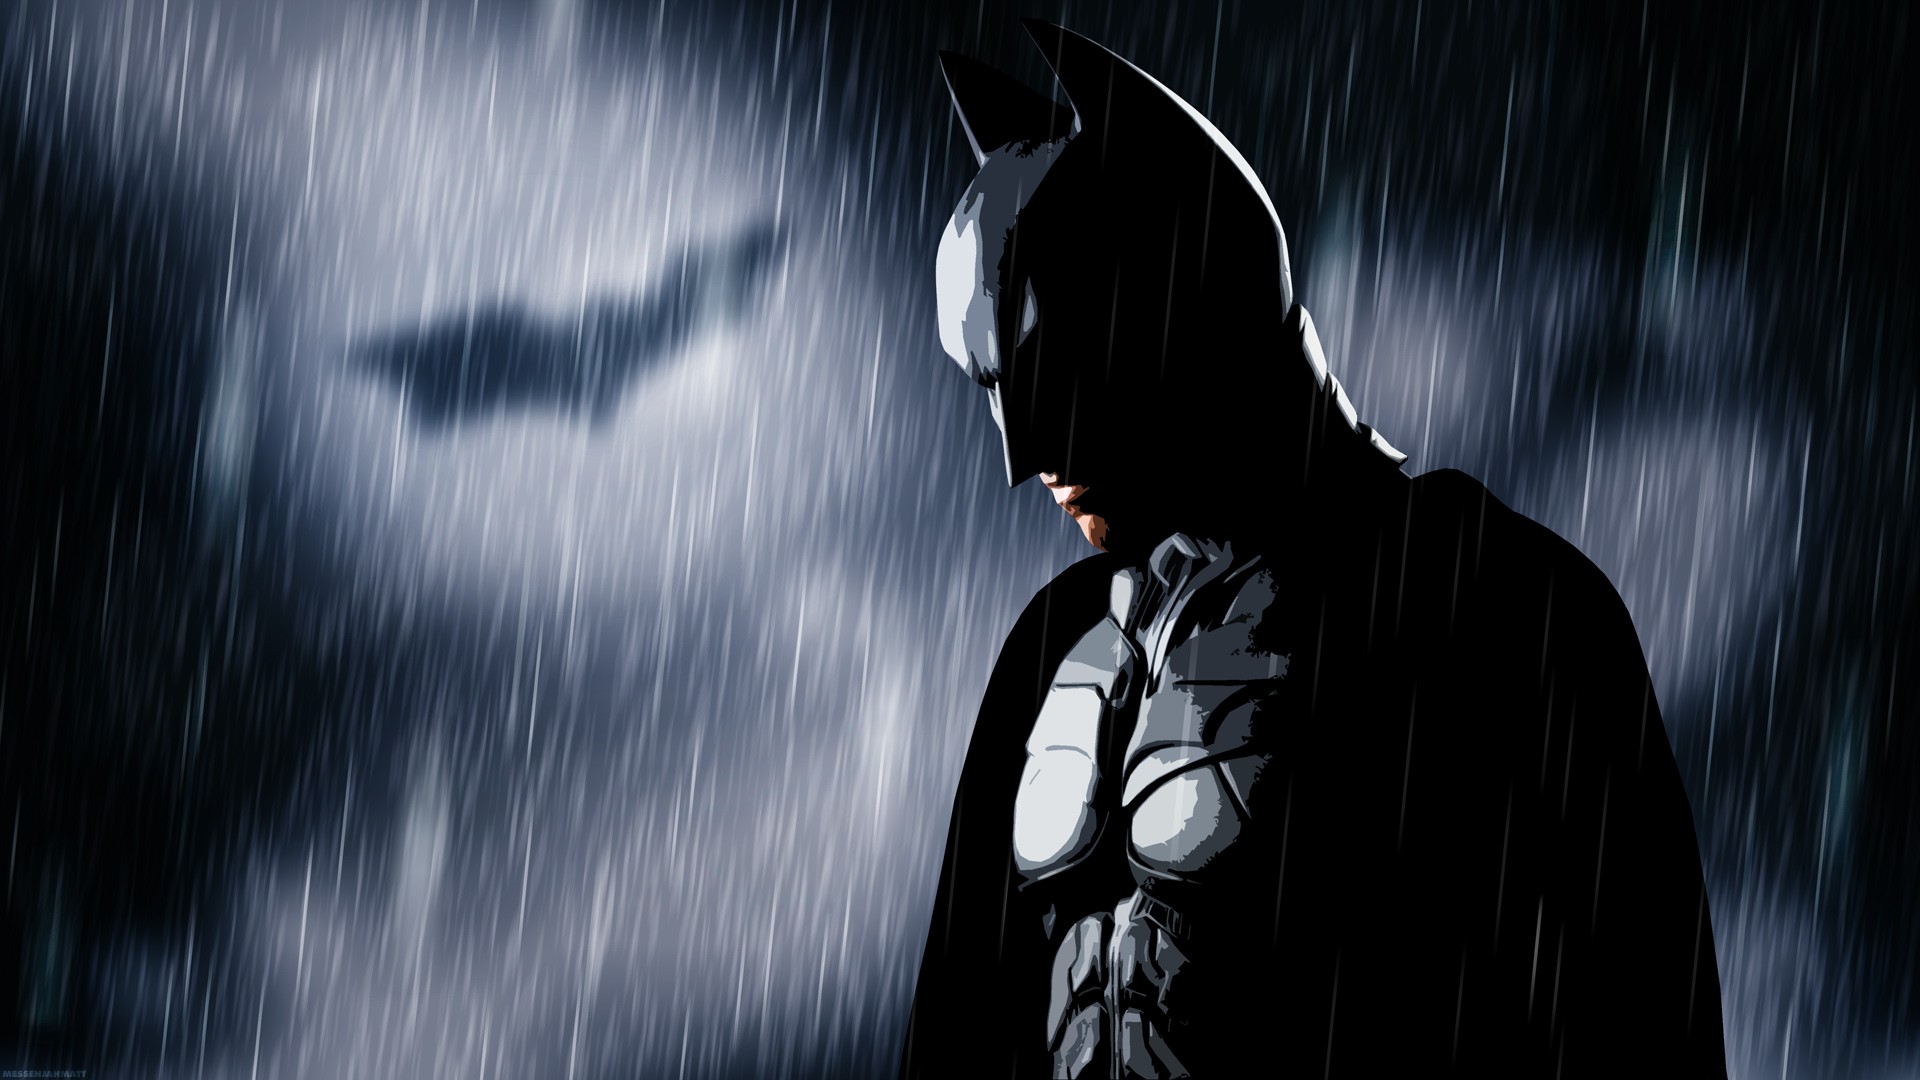 Batman Bat Signal Rain MessenjahMatt Movies The Dark Knight 1920x1080